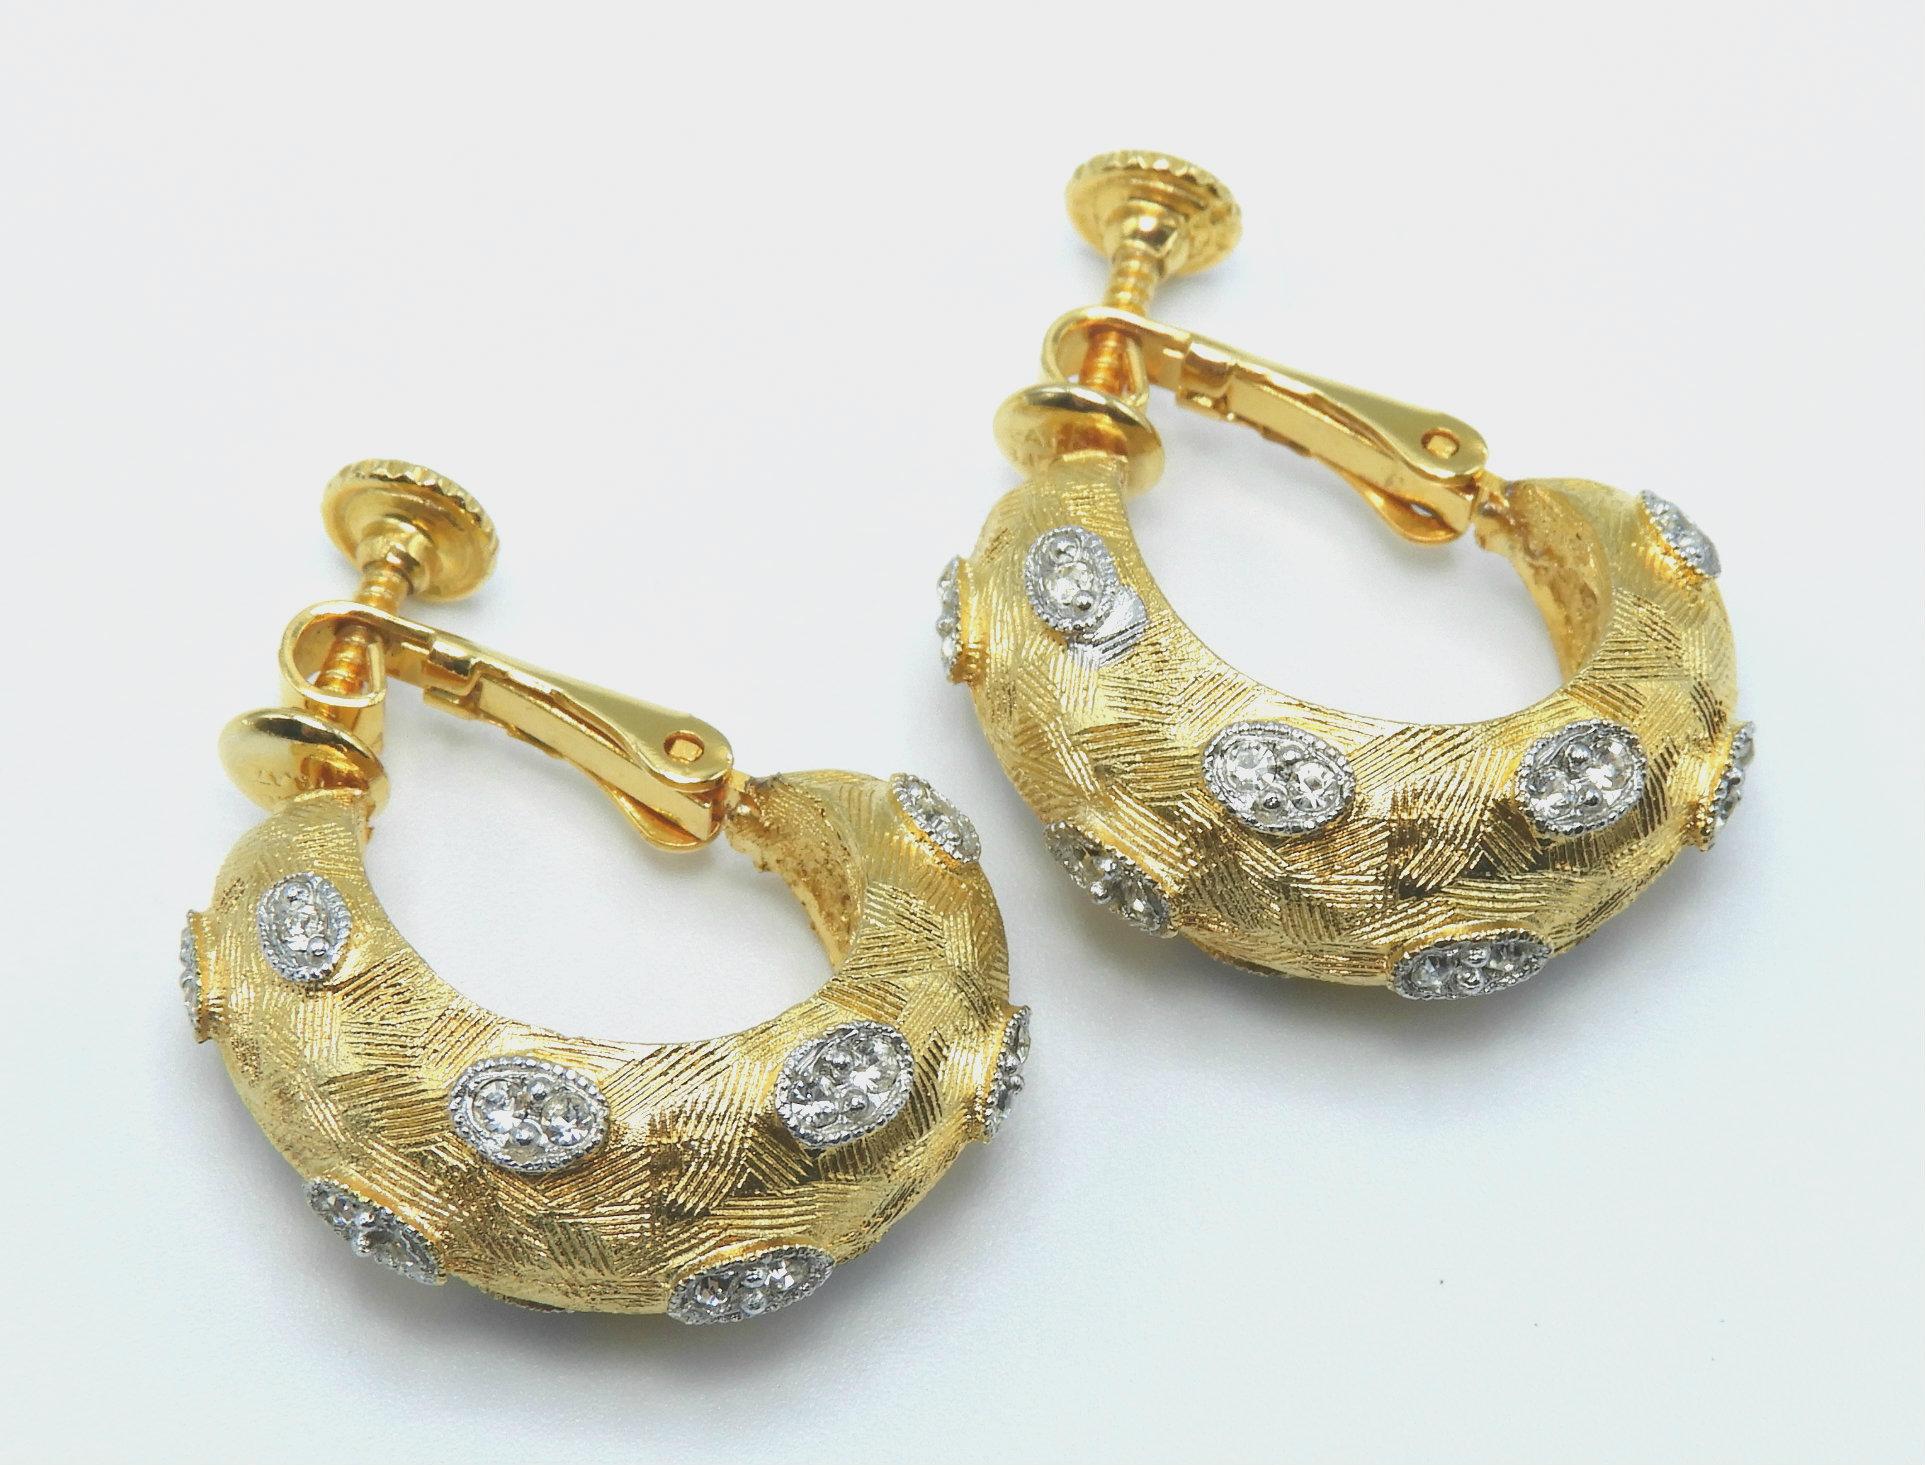 Fernando Originals Necklace and Earring Set